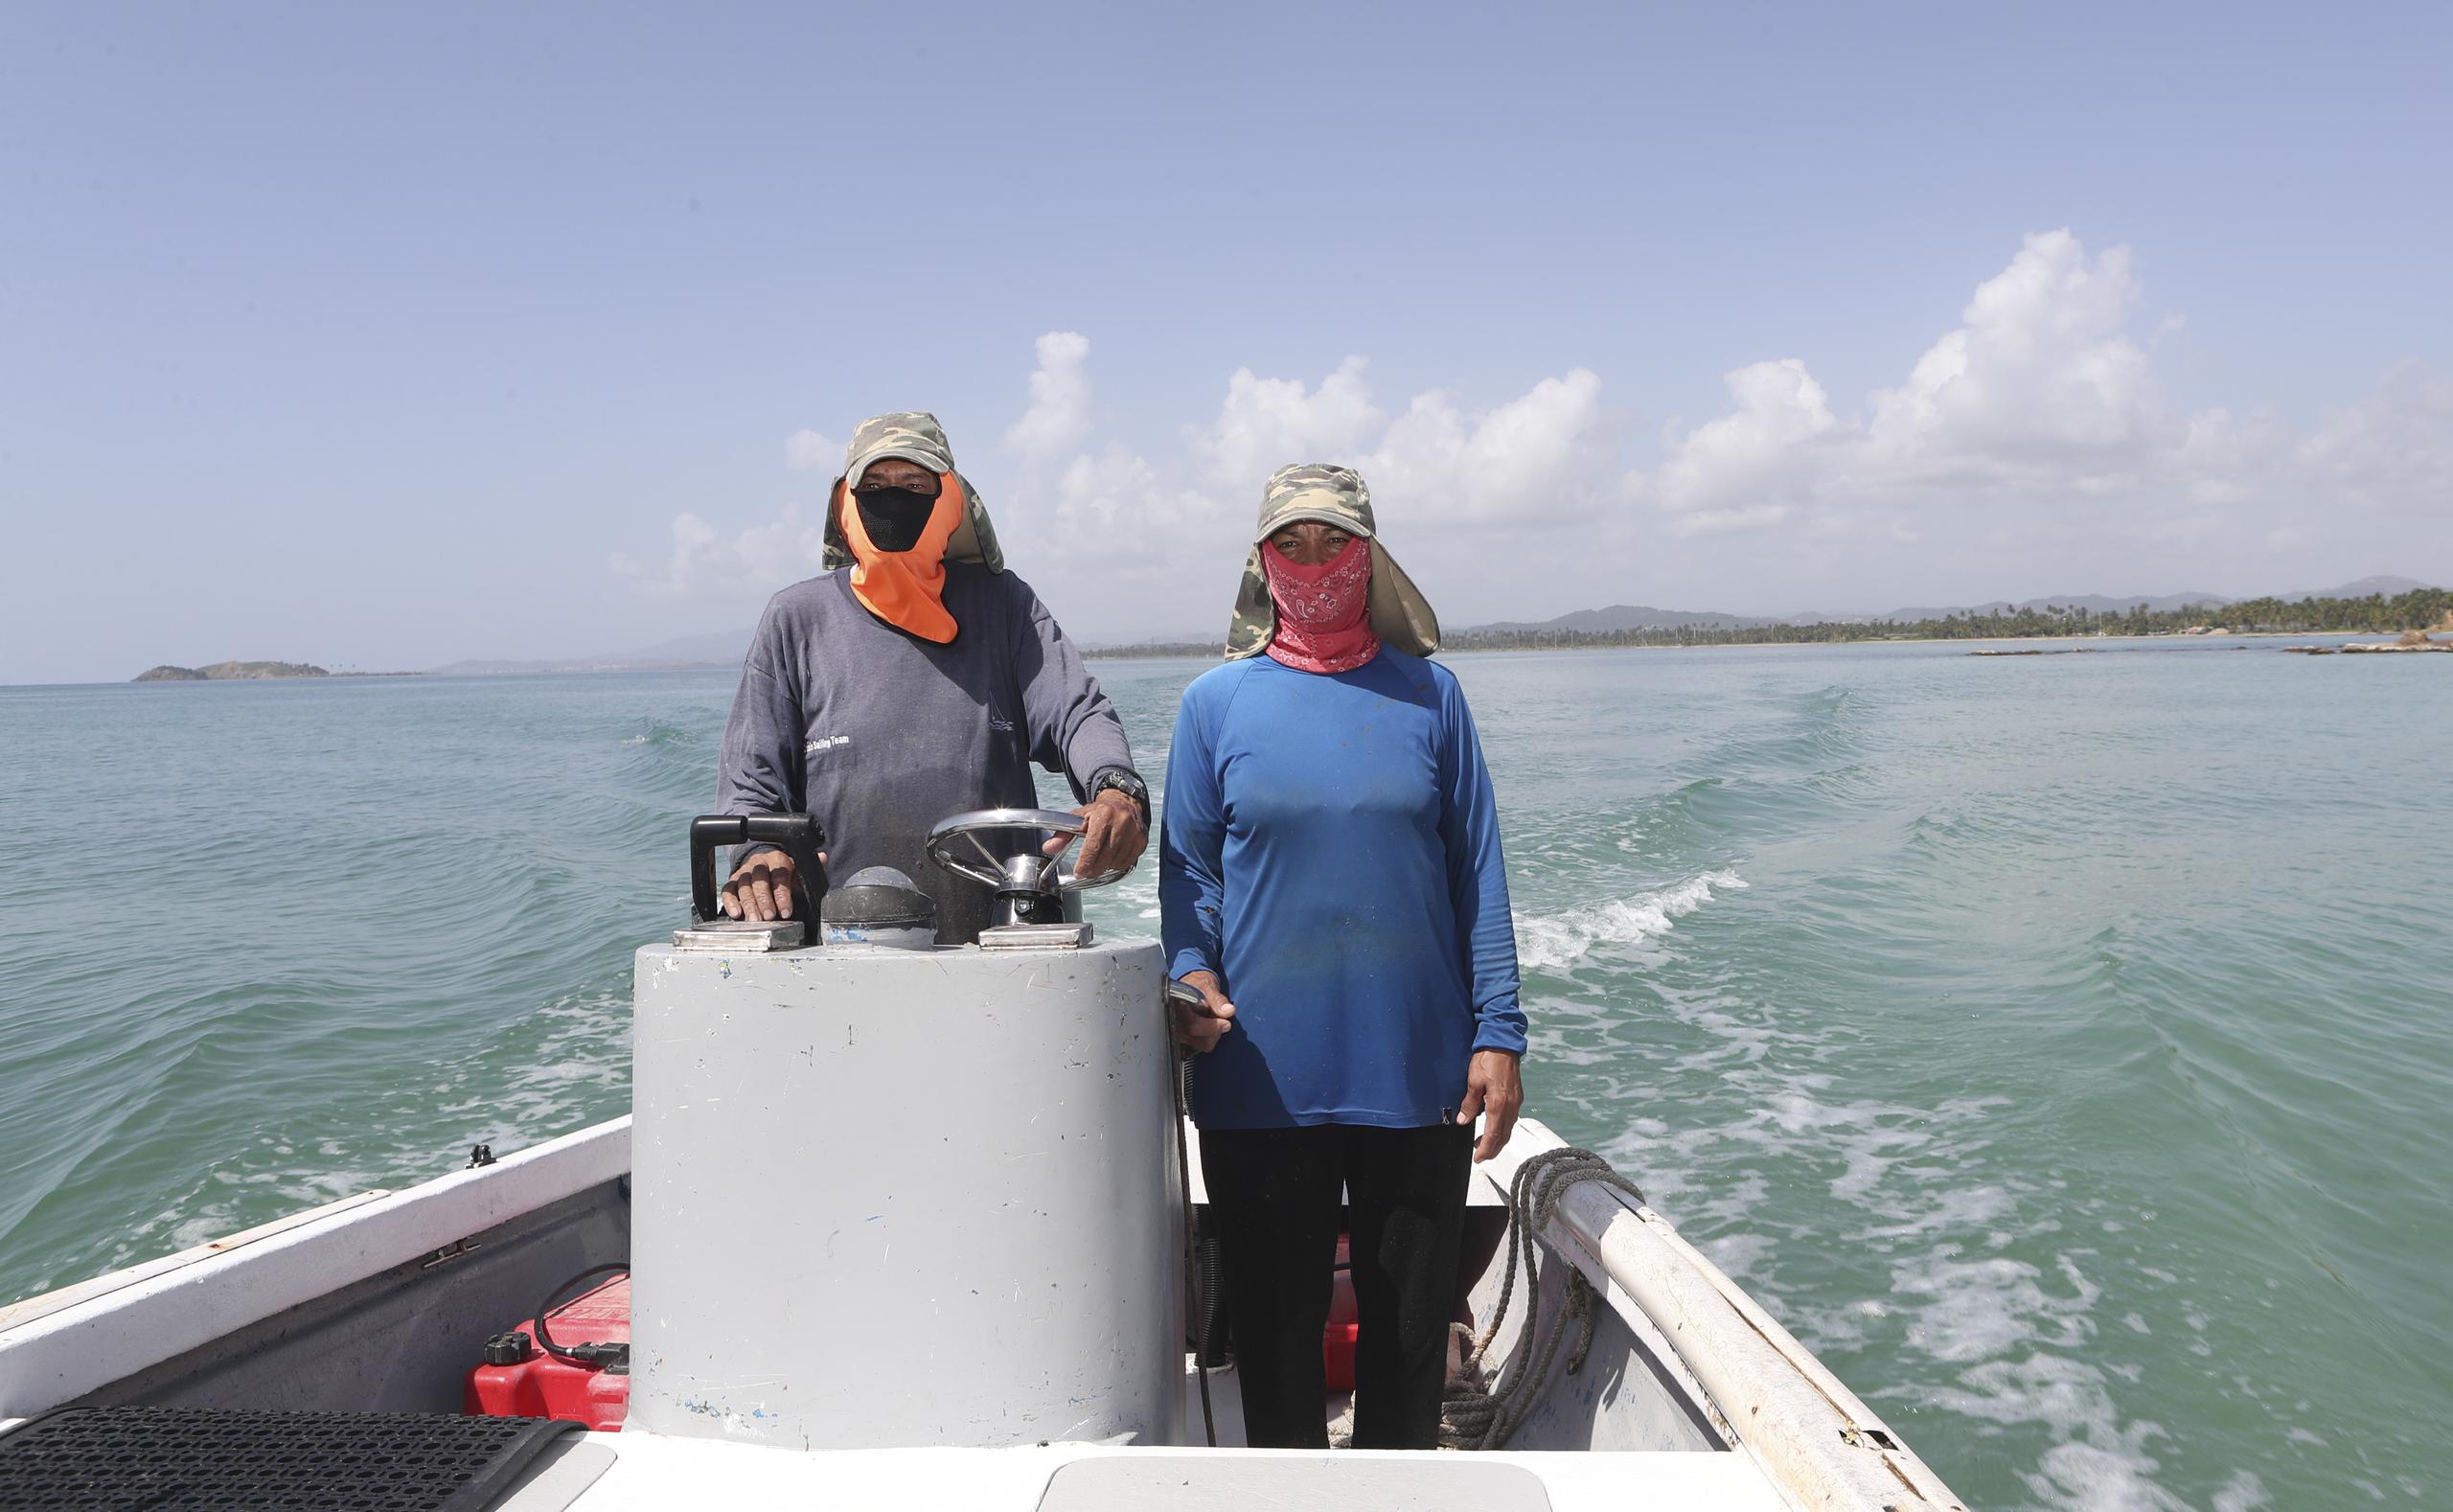 Yolanda sale a pescar junto a su esposo Miguel Ángel “Micky” Gómez.

